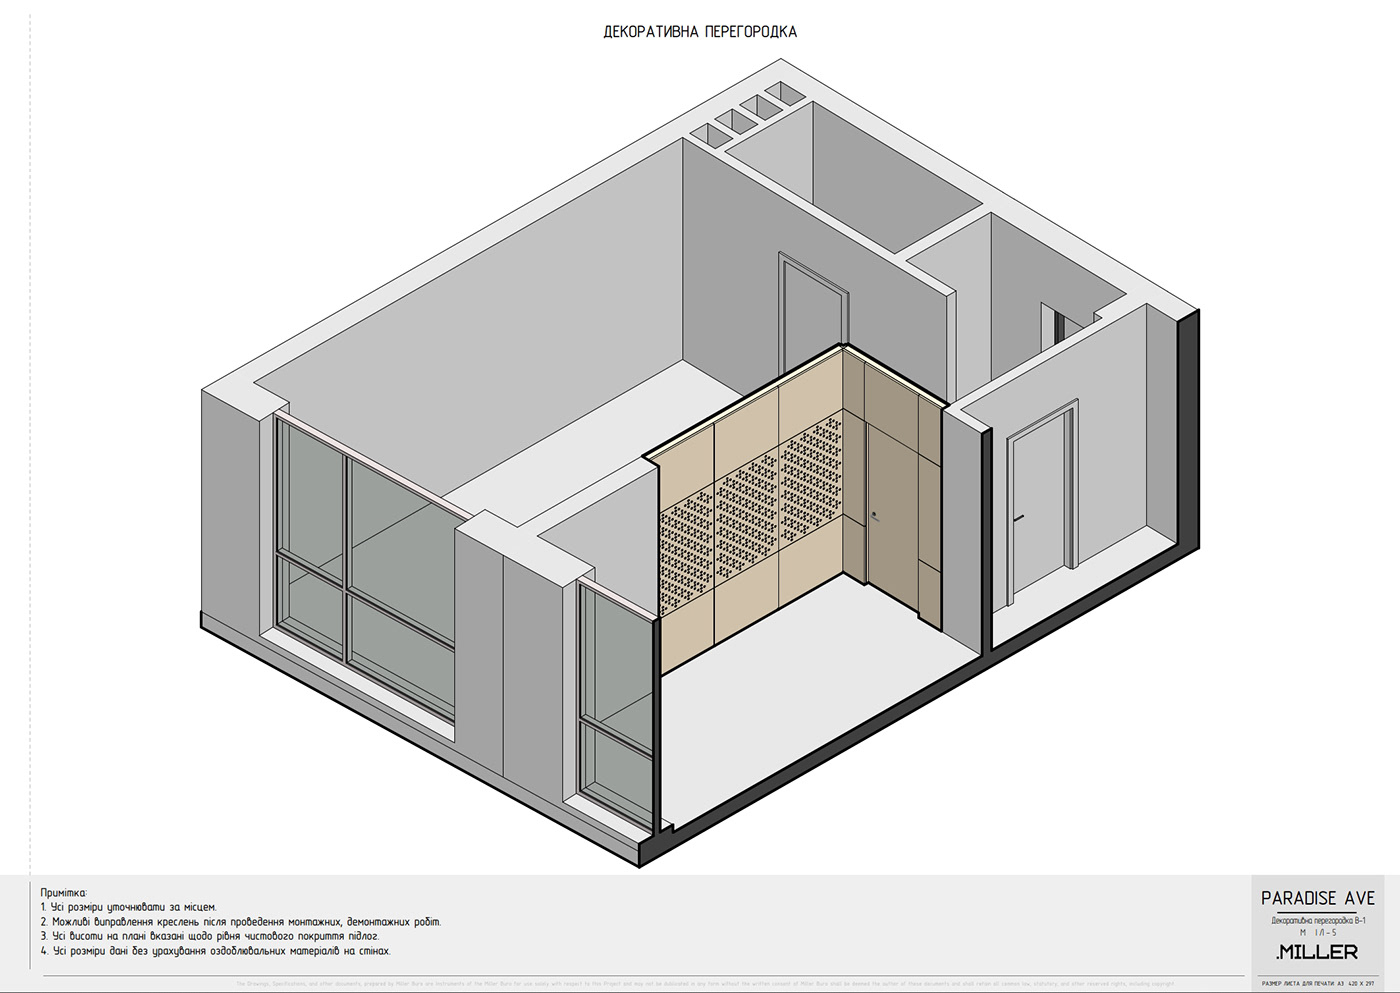 Boom scheme of layout plan interior design plywood